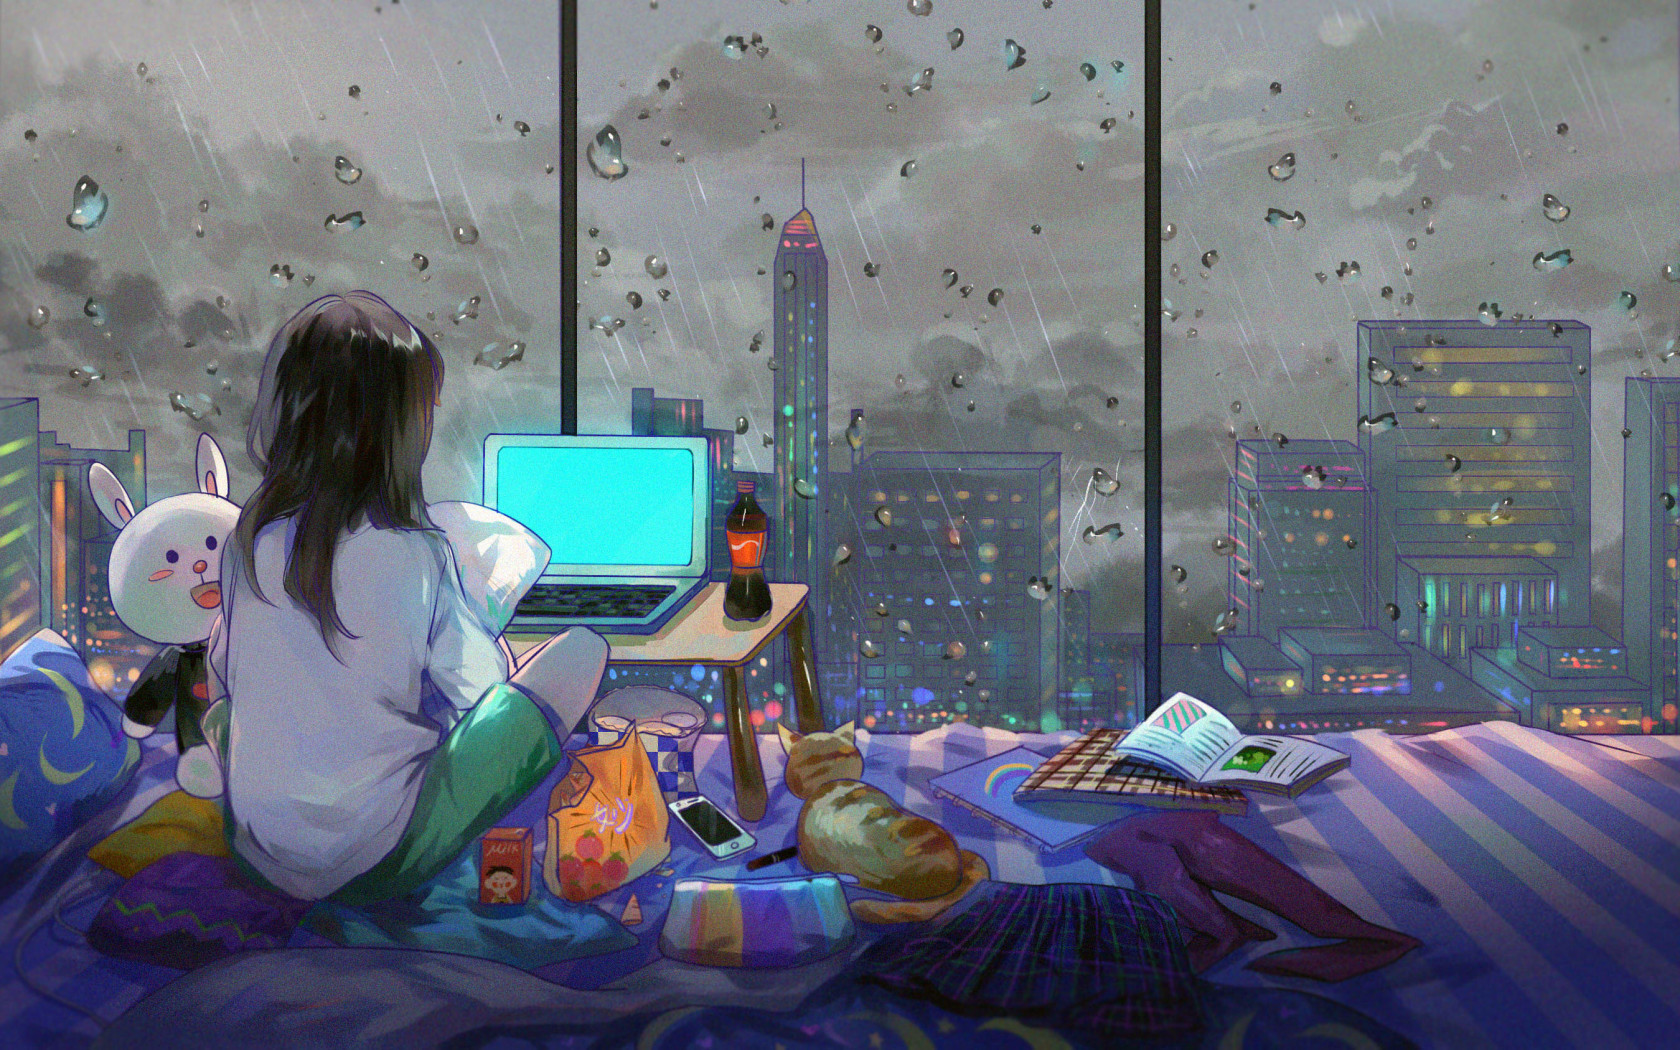 Anime Girl In Room - 1680x1050 Wallpaper 